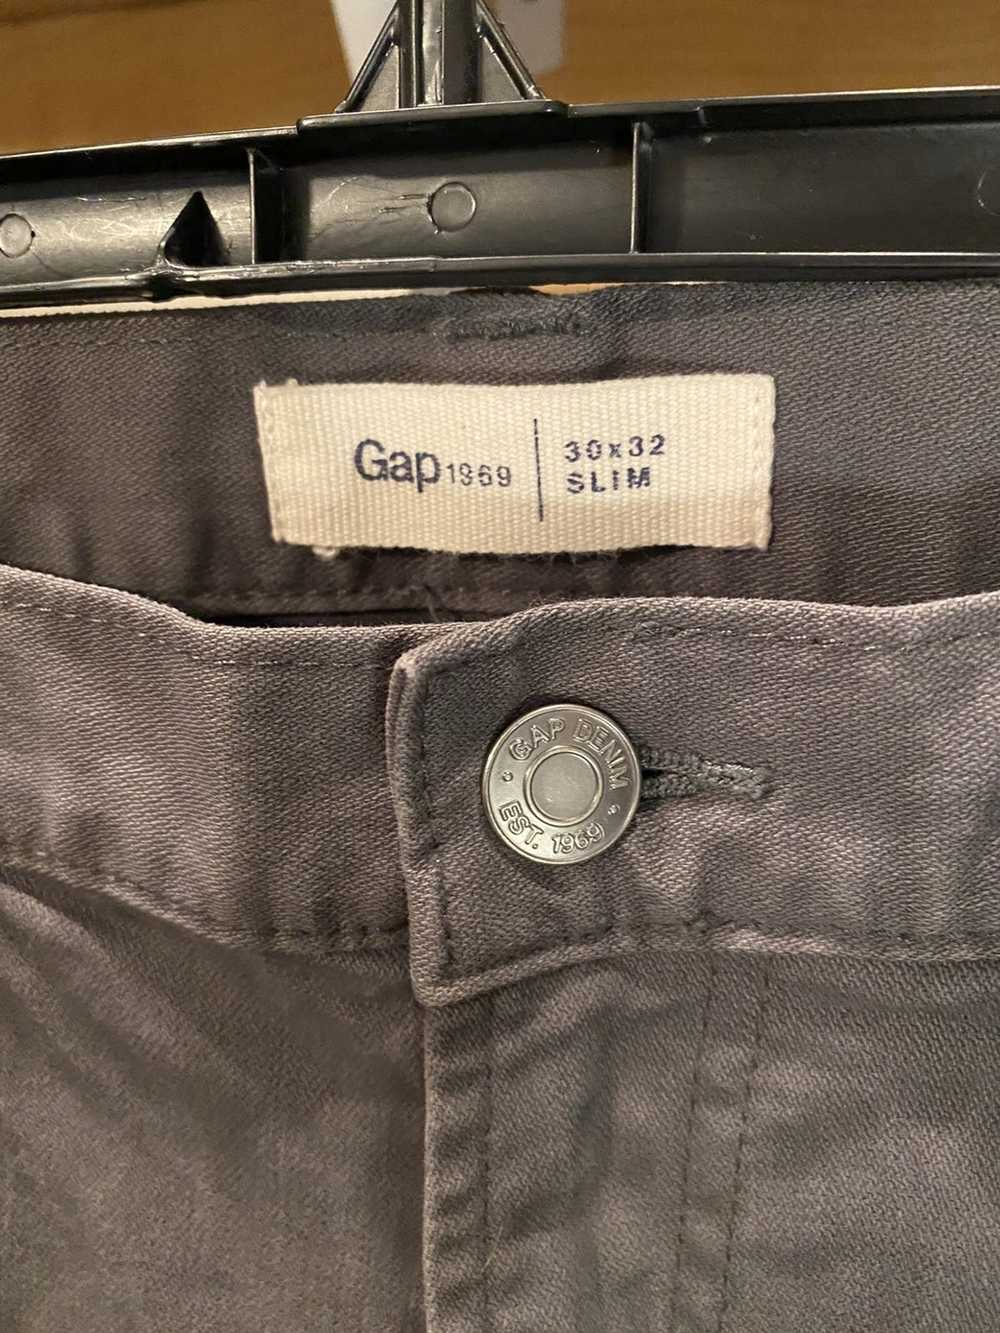 Gap Gap 1969 Slim jeans x vintage - image 3